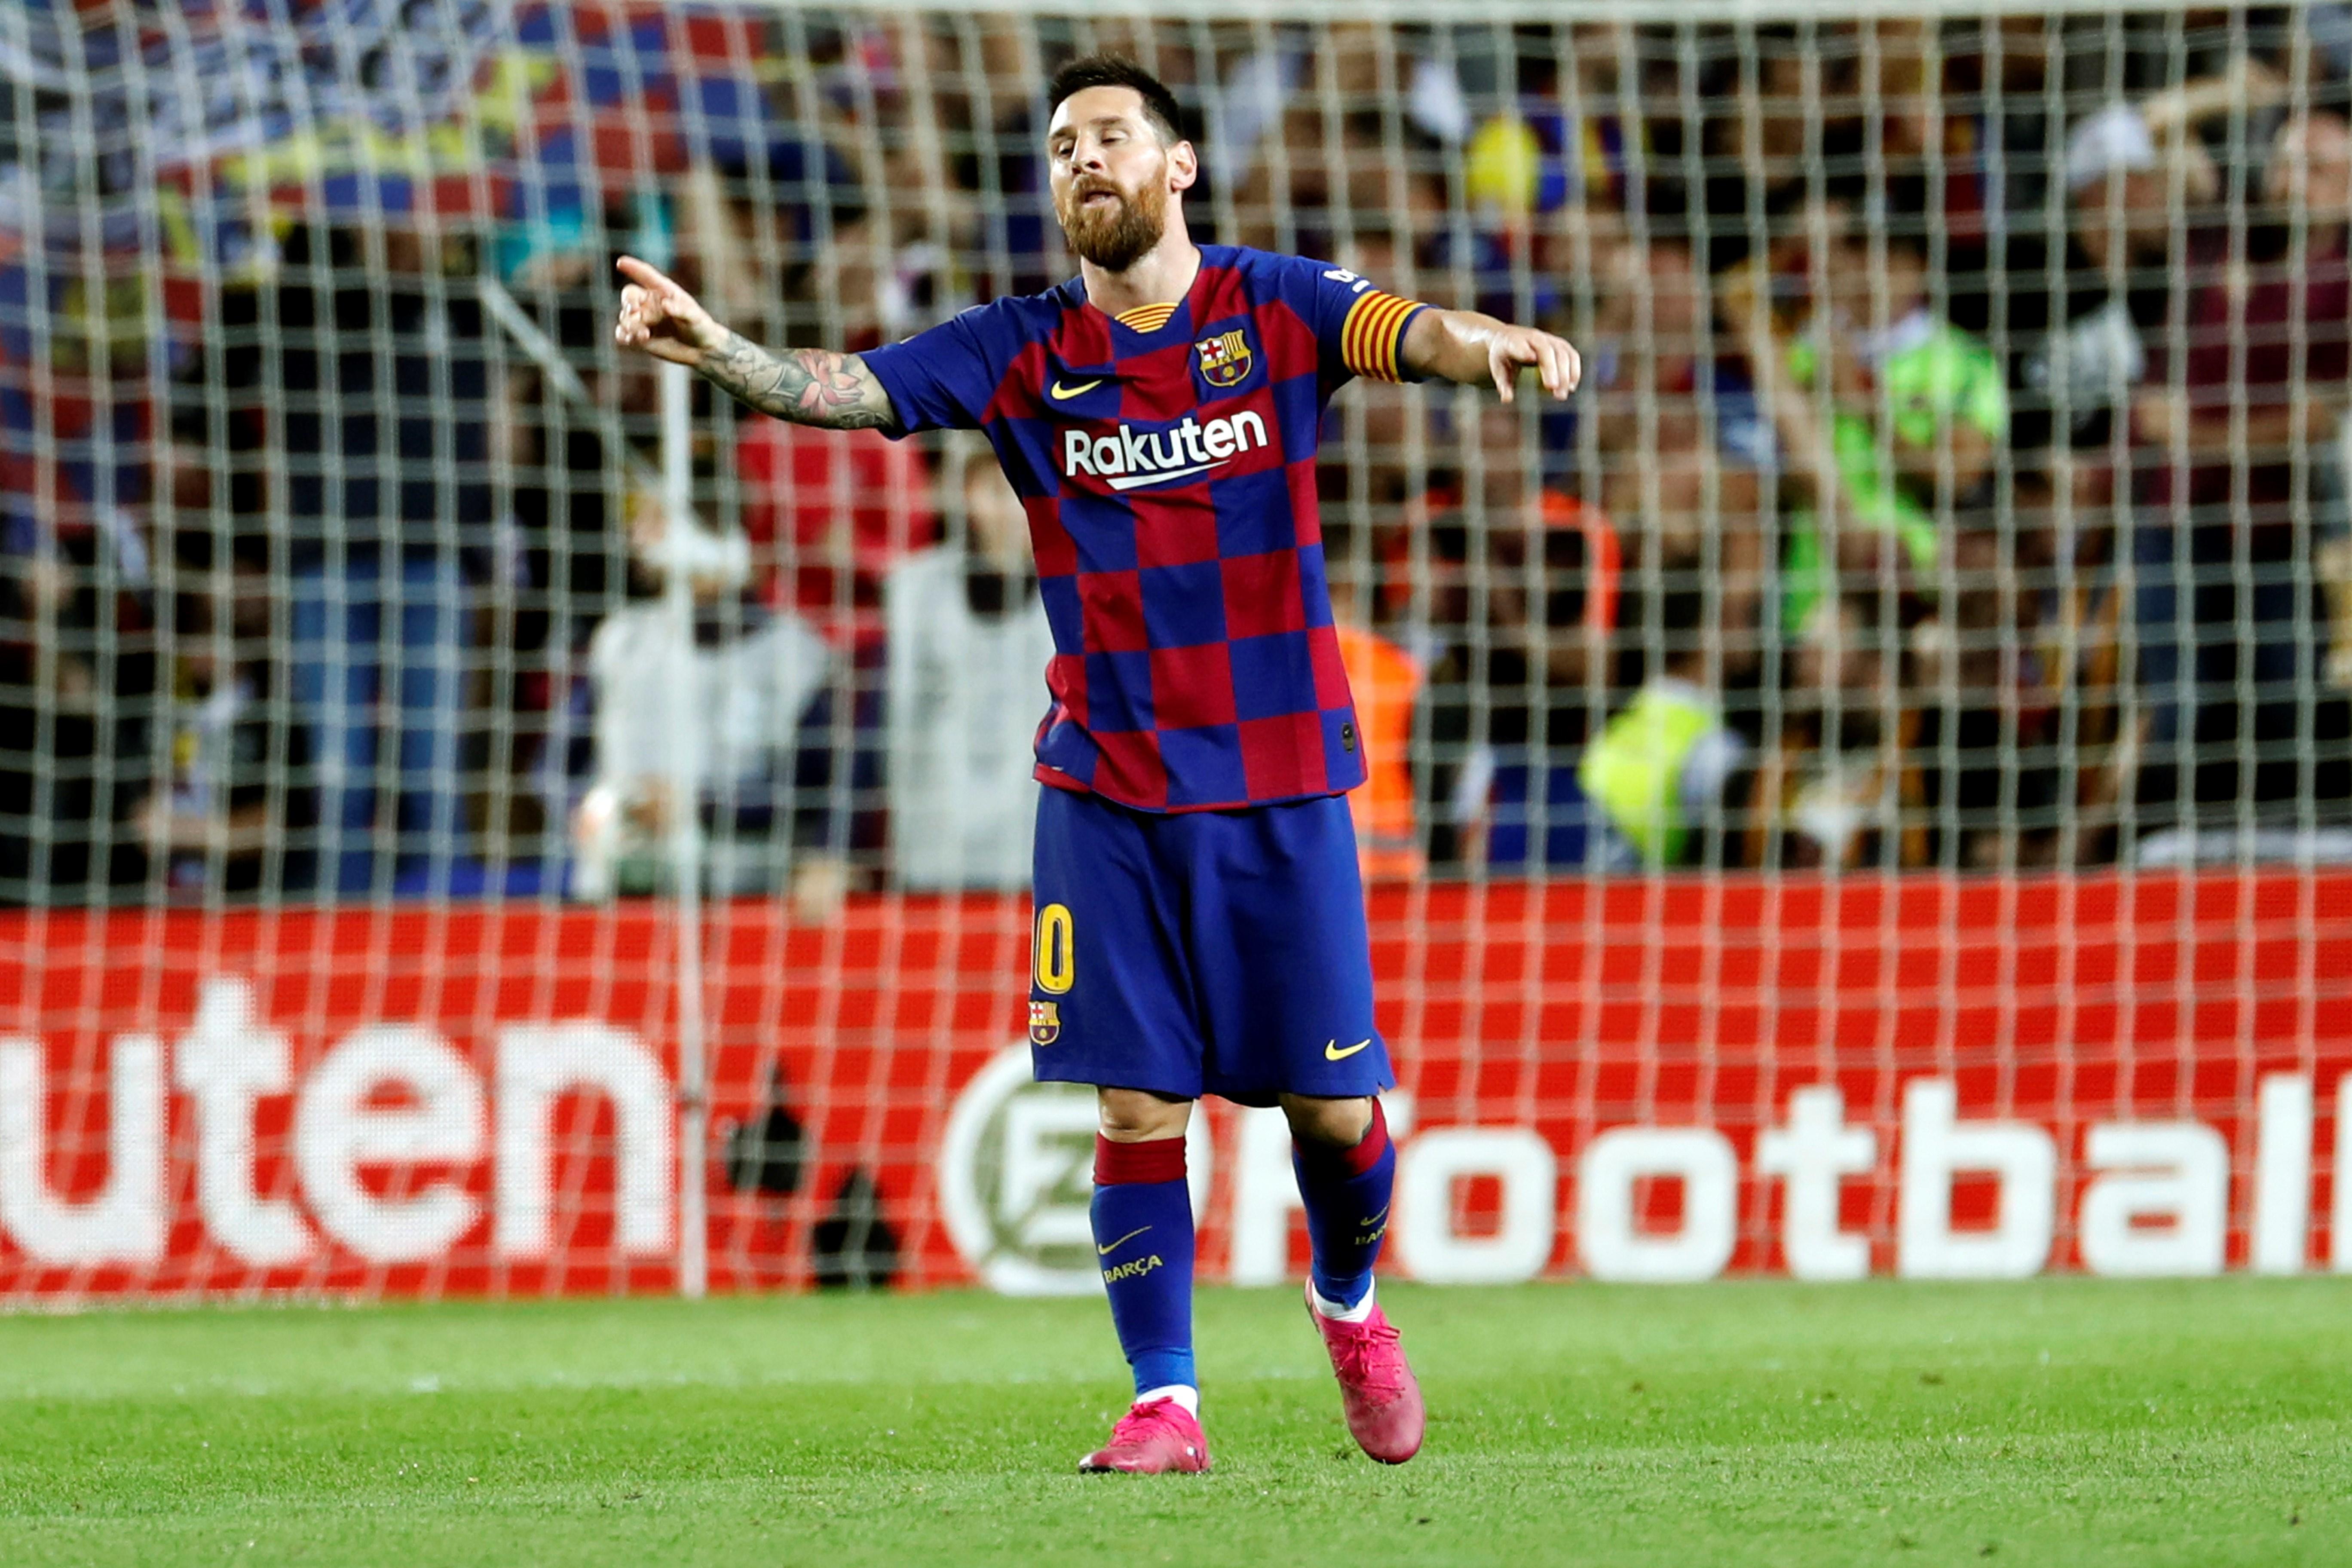 El Comitè de Competició manté la groga a Messi i el Barça farà un nou recurs